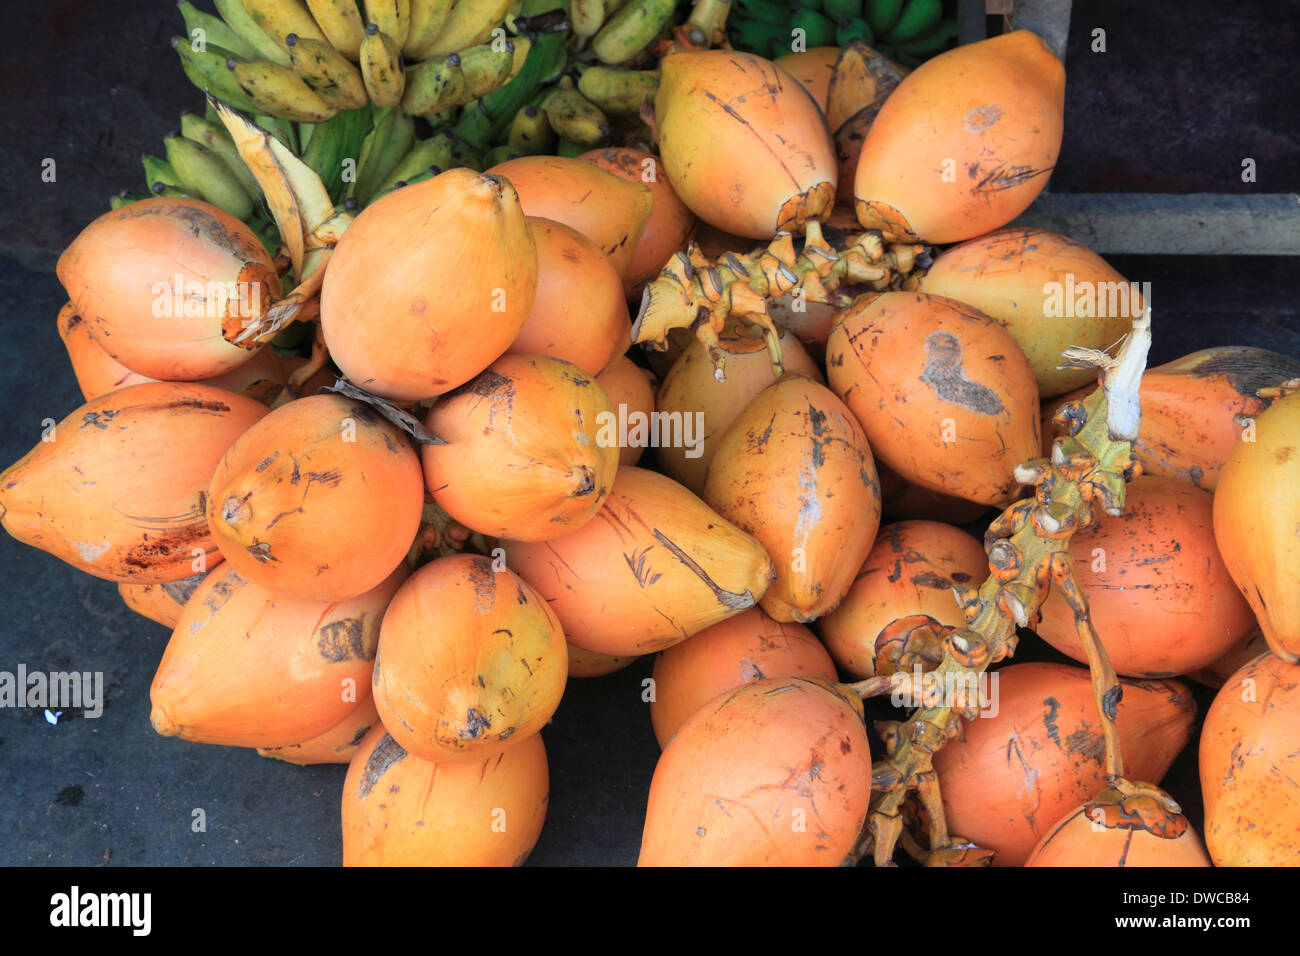 Sri Lanka; Kandy; market, coconuts, Stock Photo